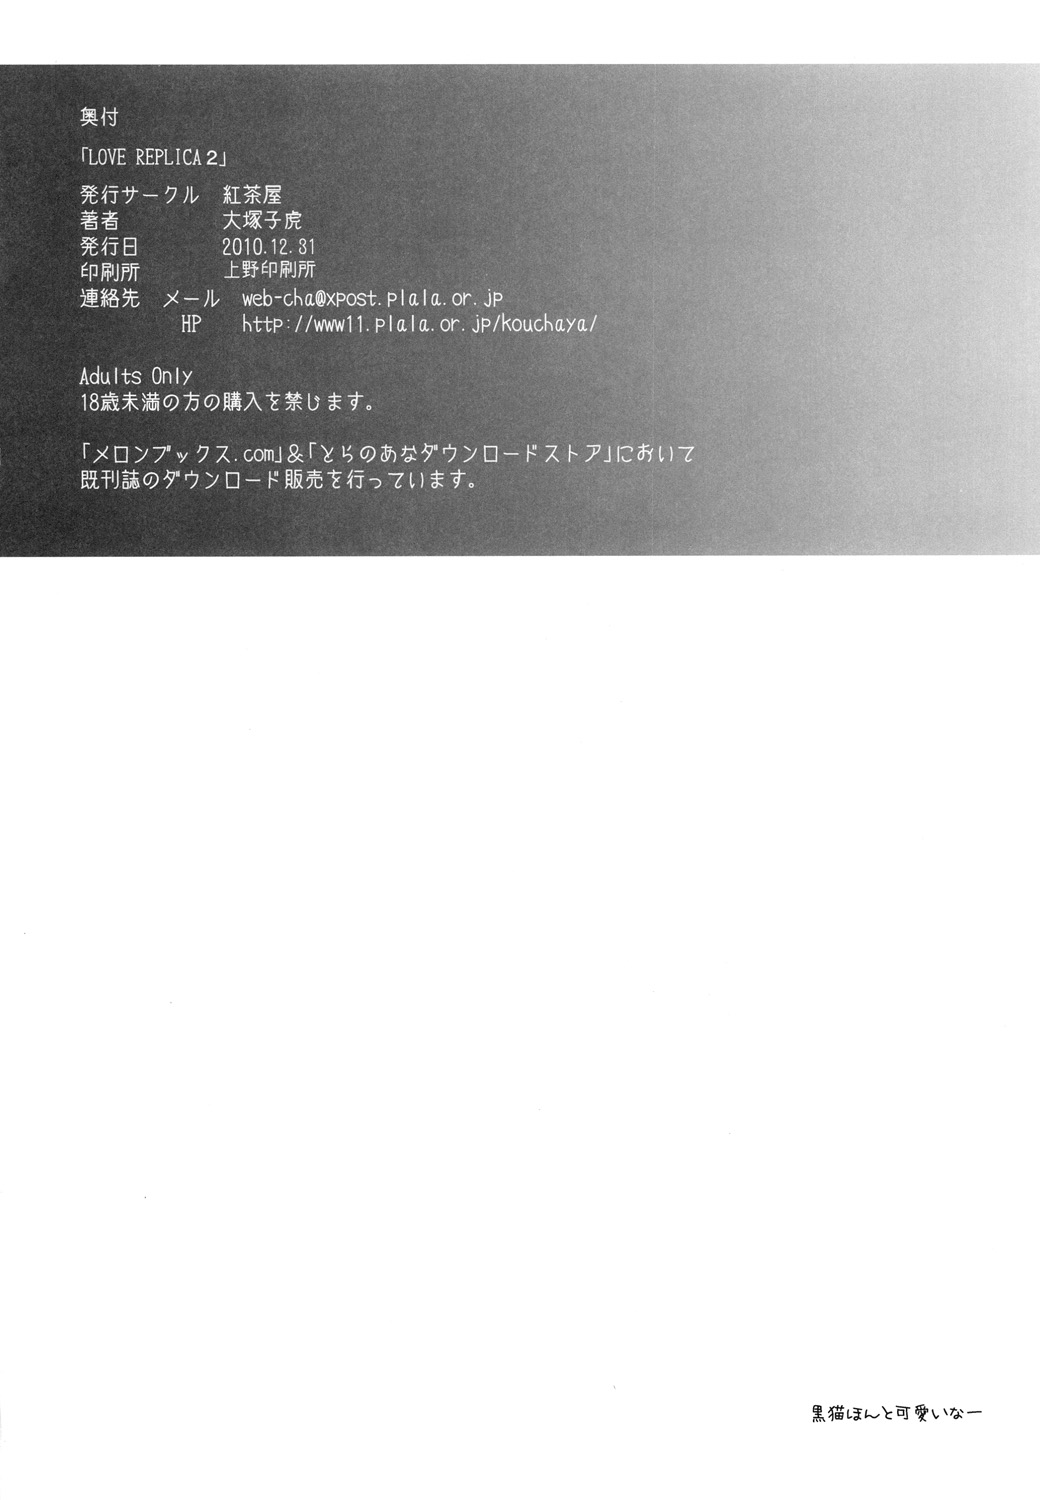 [Kouchaya (Ootsuka Kotora)] LOVE REPLICA 2 (Ore no Imouto ga Konna ni Kawaii Wake ga Nai) [Digital] page 49 full